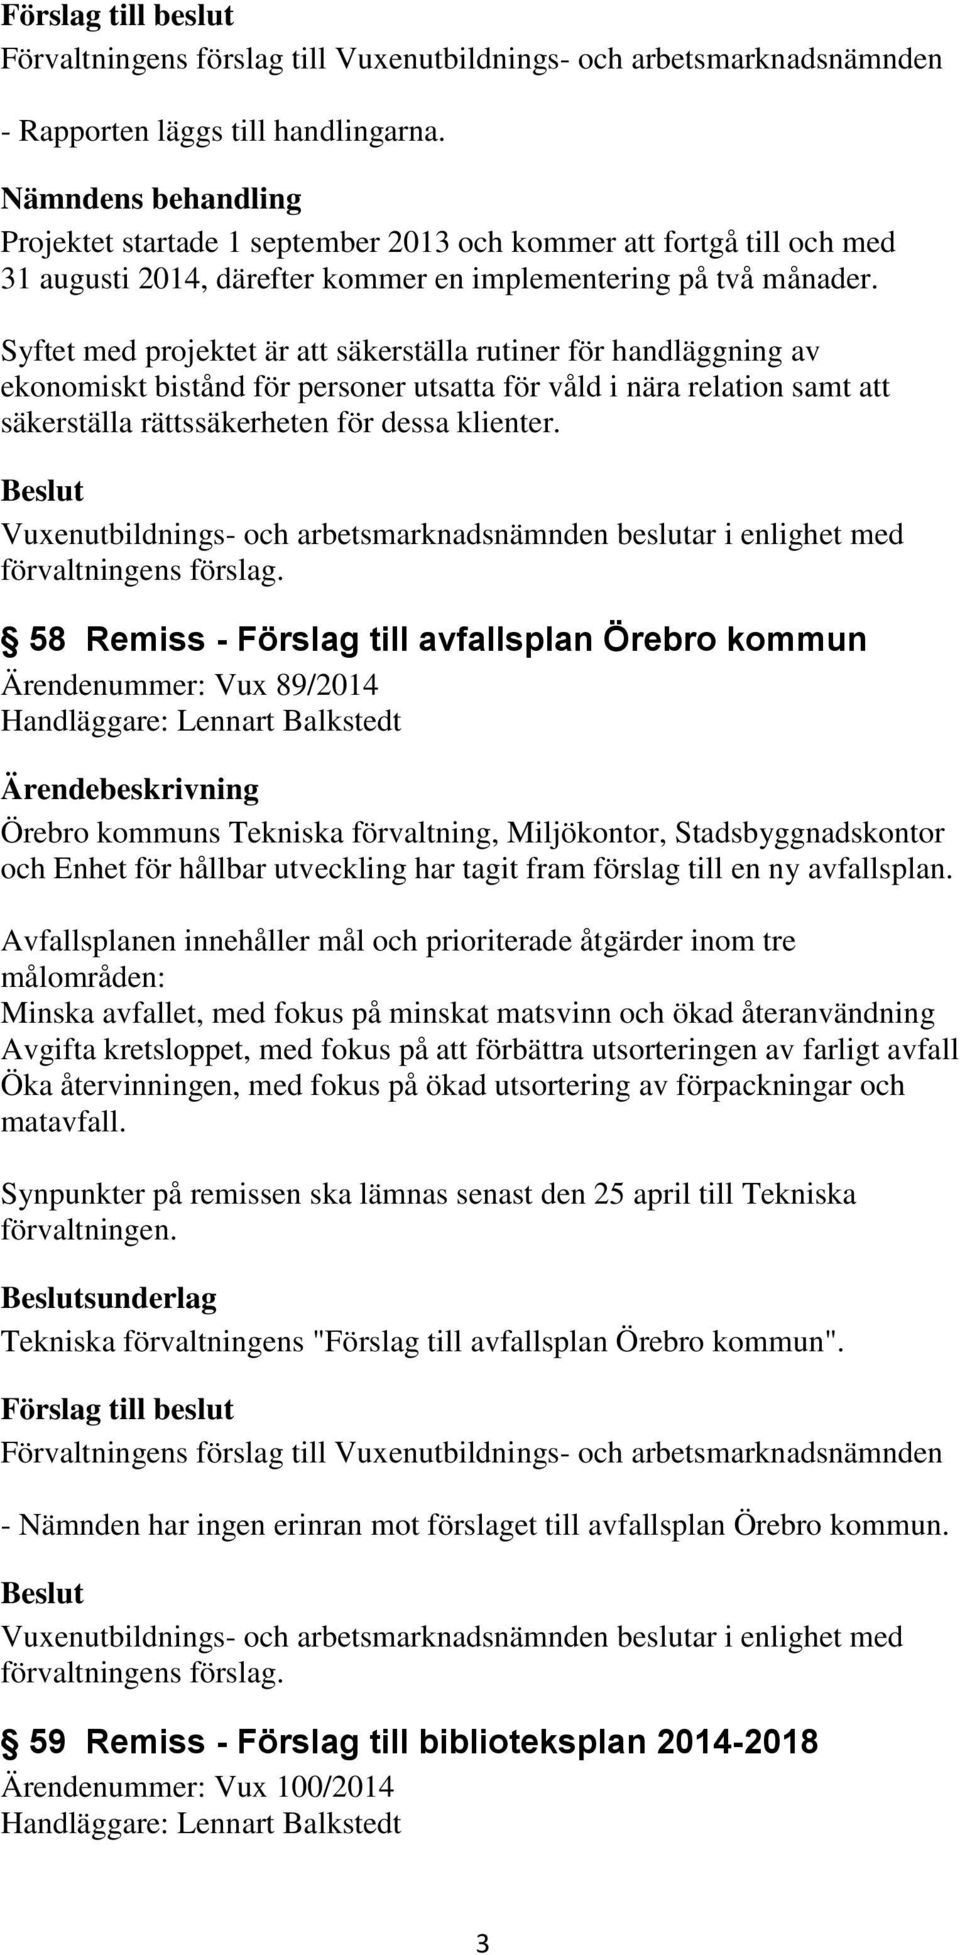 58 Remiss - Förslag till avfallsplan Örebro kommun Ärendenummer: Vux 89/2014 Handläggare: Lennart Balkstedt Örebro kommuns Tekniska förvaltning, Miljökontor, Stadsbyggnadskontor och Enhet för hållbar